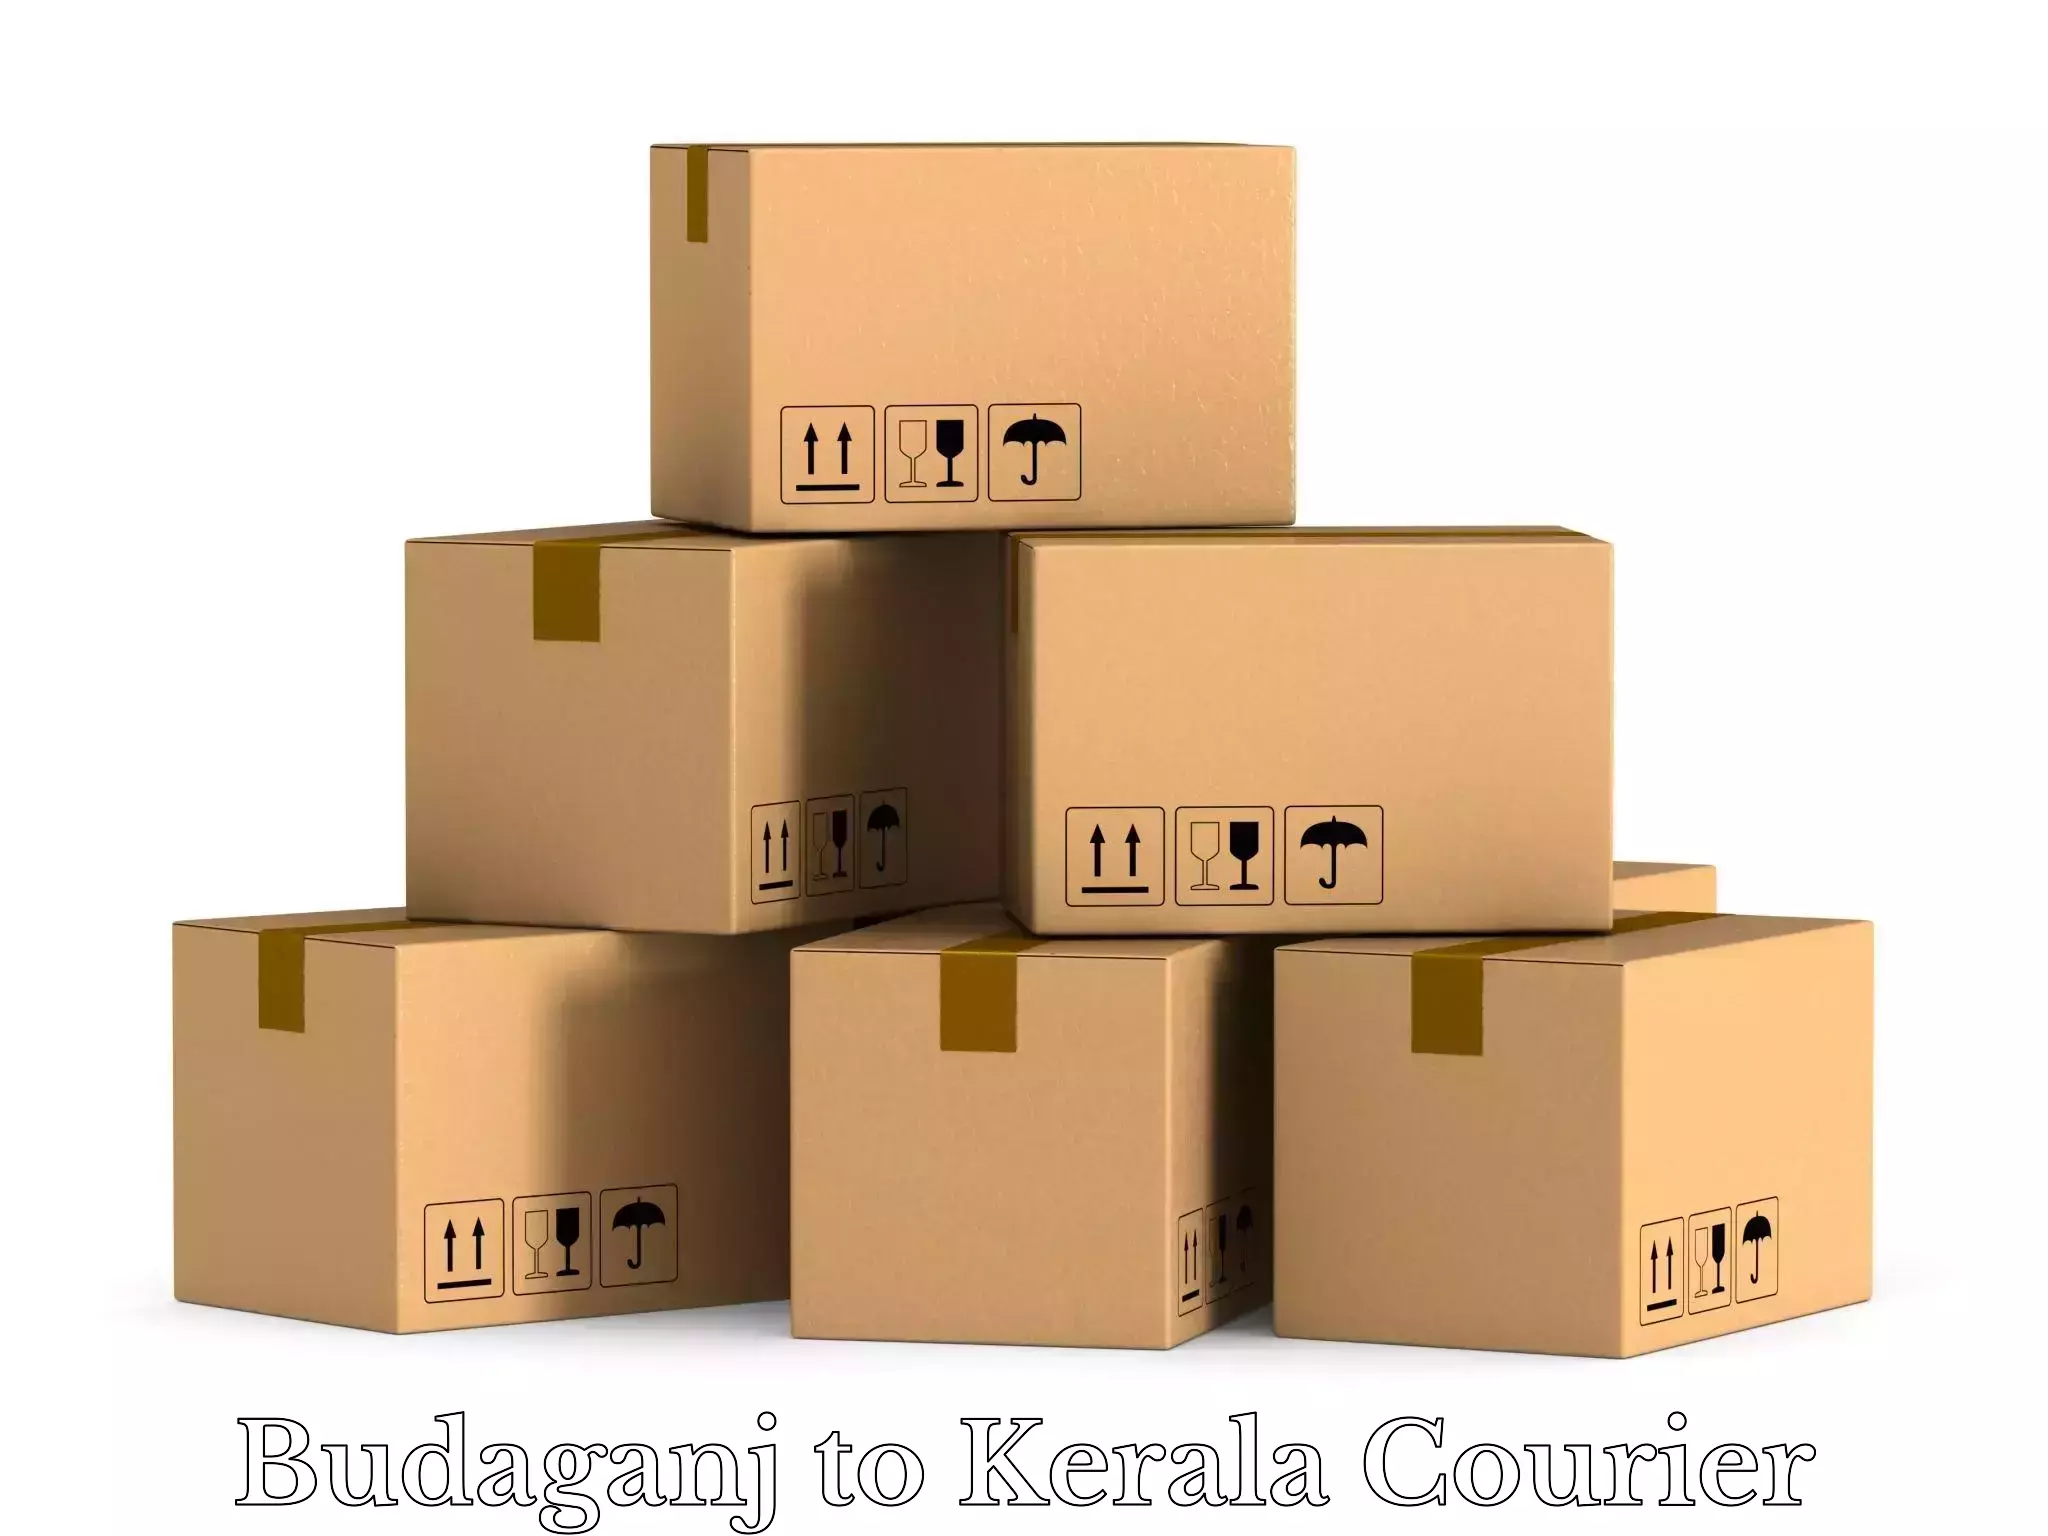 Luggage dispatch service Budaganj to Pangodu